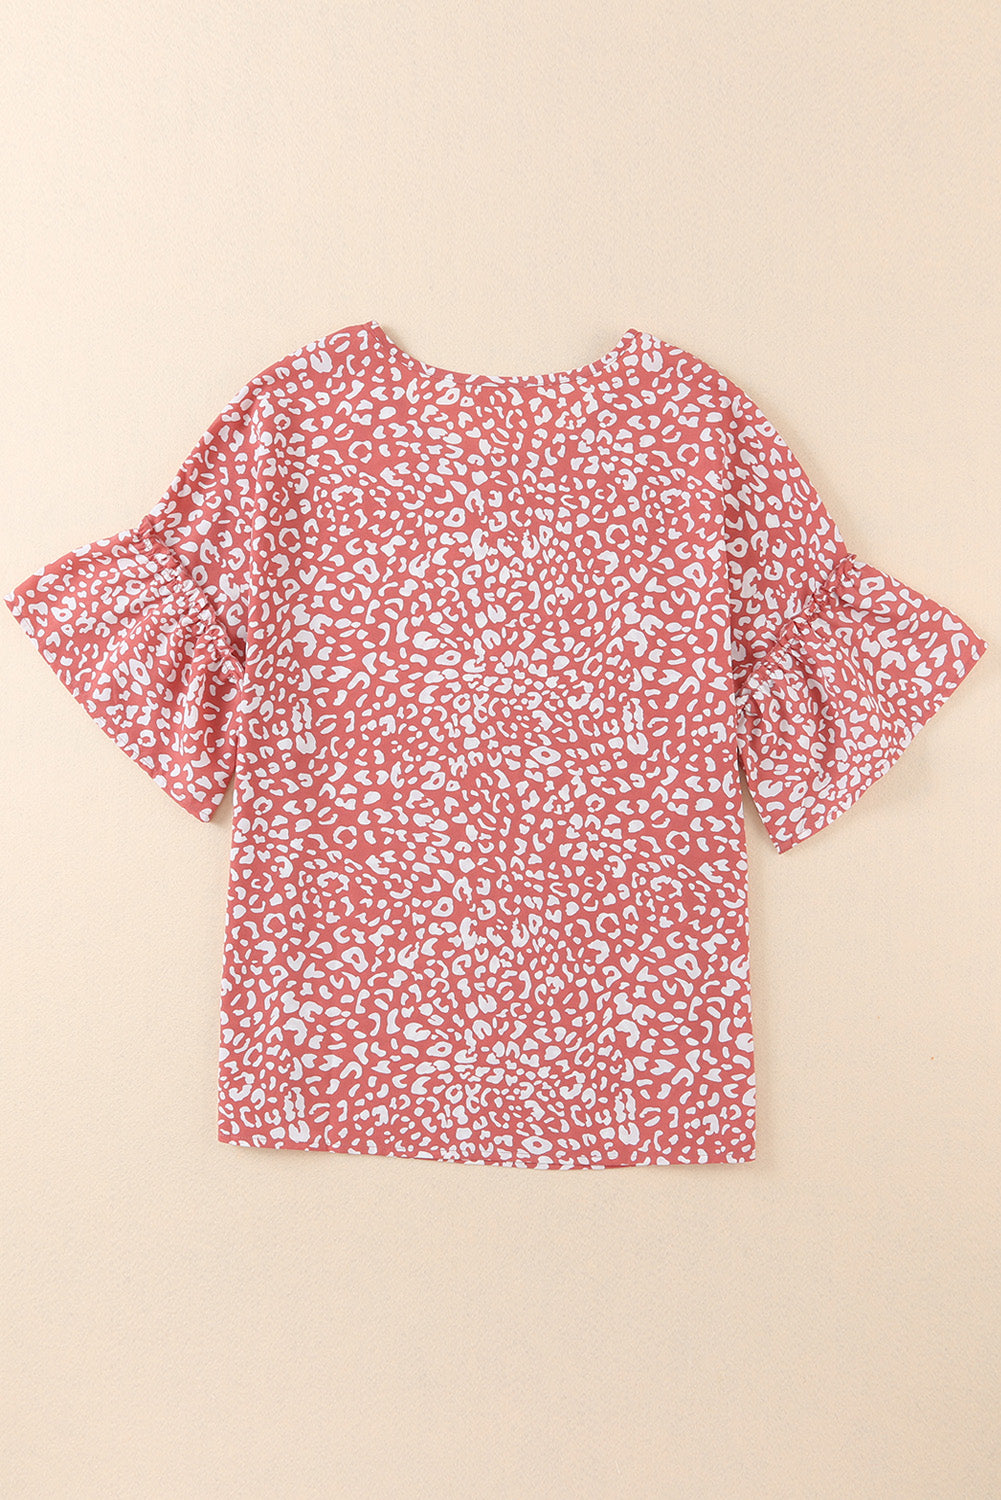 Rosafarbenes T-Shirt mit Leopardenmuster und Rüschenärmeln